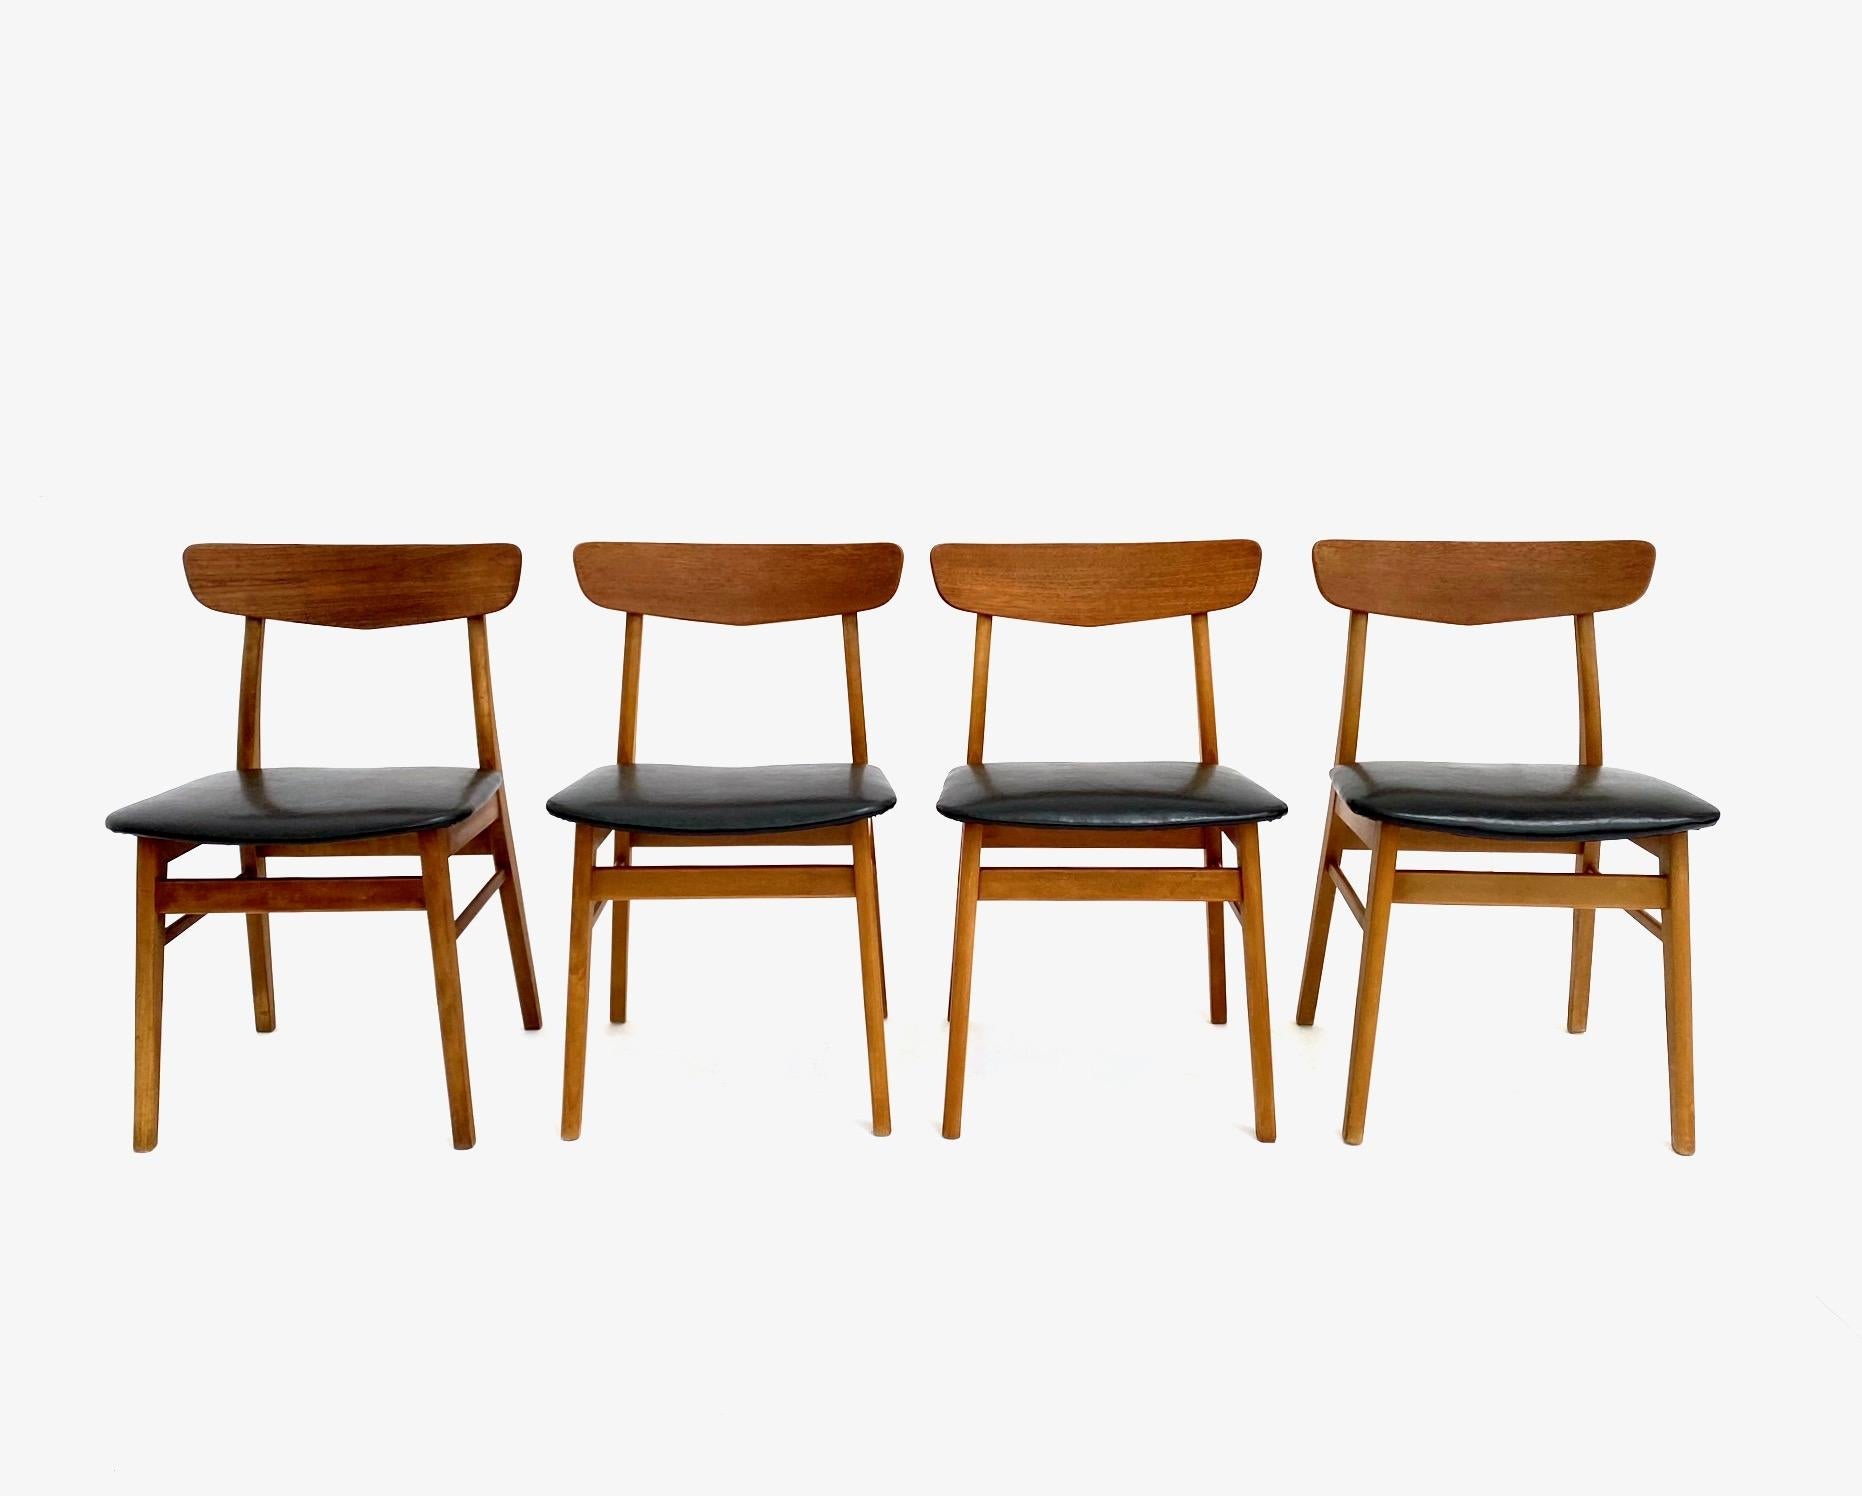 Un magnifique ensemble de 4 chaises de salle à manger en teck et hêtre vinyle noir par Farstrup Møbelfabrik, ces chaises feraient une addition élégante à n'importe quel espace de salle à manger.

Les chaises sont dotées d'un large pad d'assise et